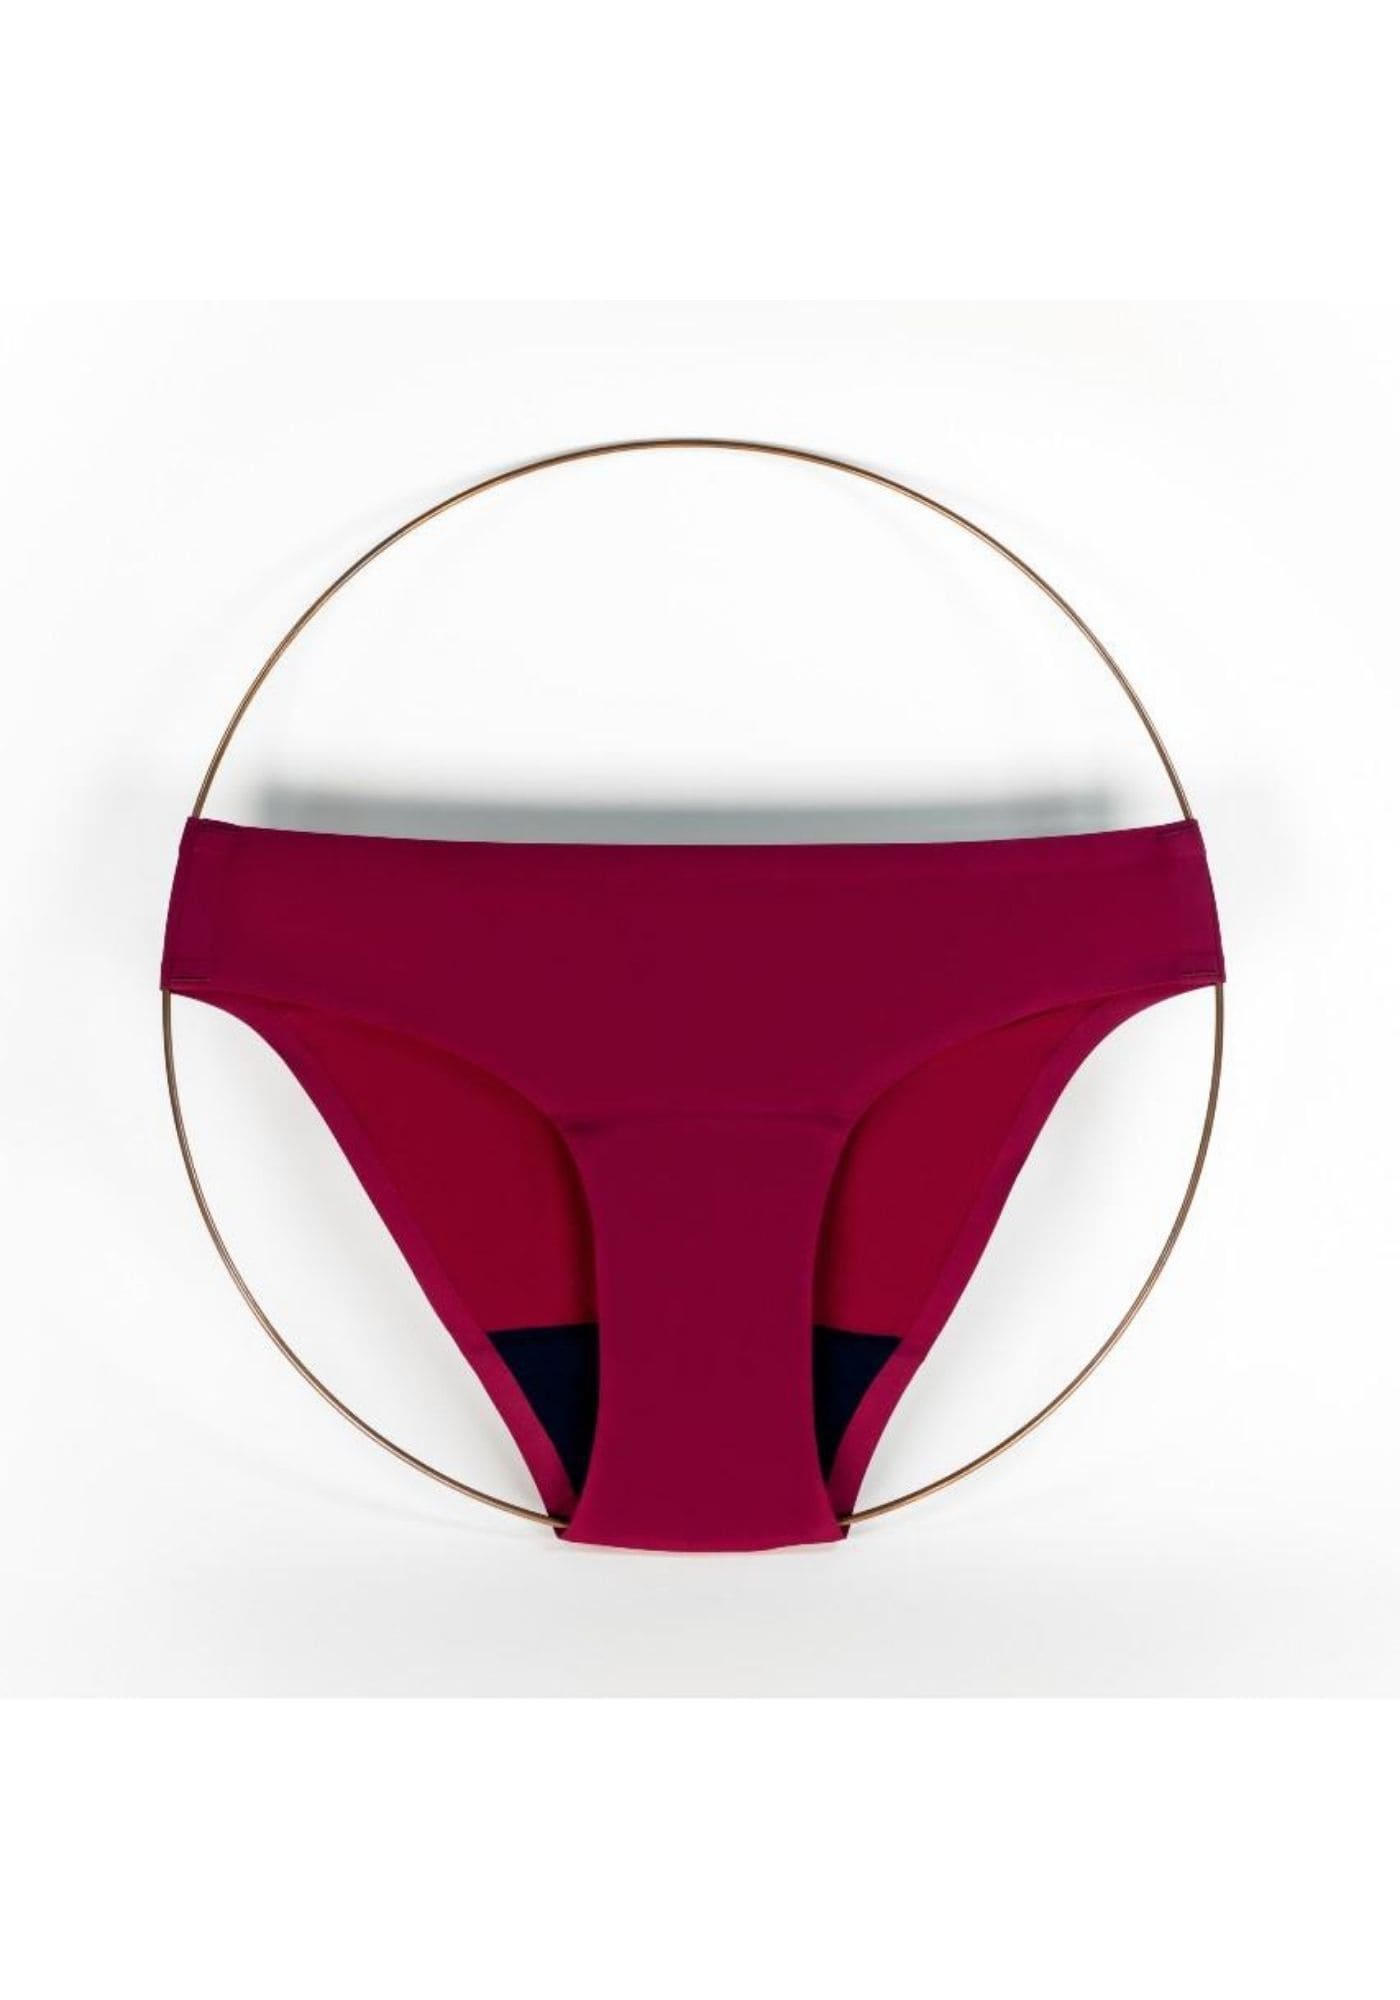 culotte-menstruelle-selene-terracotta-smoon-lingerie-zero-dechet-confort